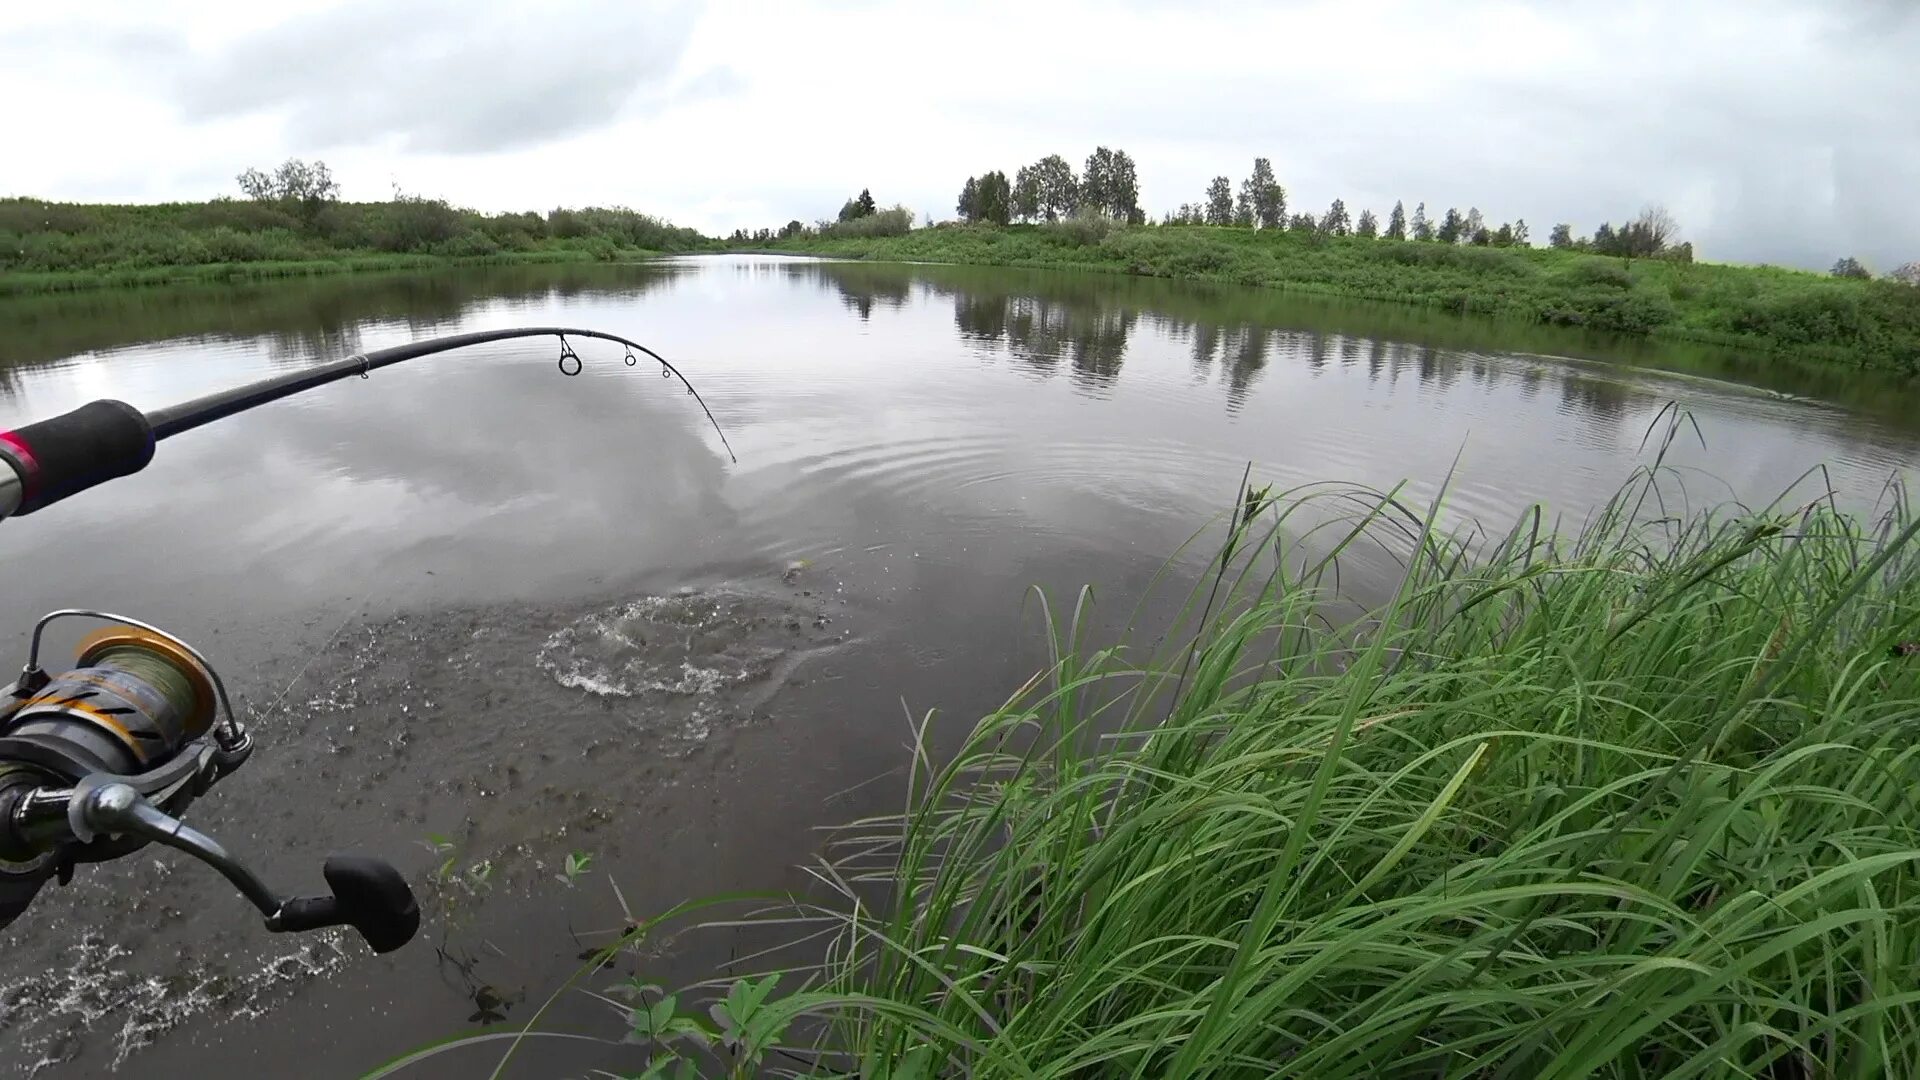 Горнешное озеро Бологое. Природа рыбалка. Рыбалка на озере. Красивые места для рыбалки. Бесплатная рыбалка на озерах